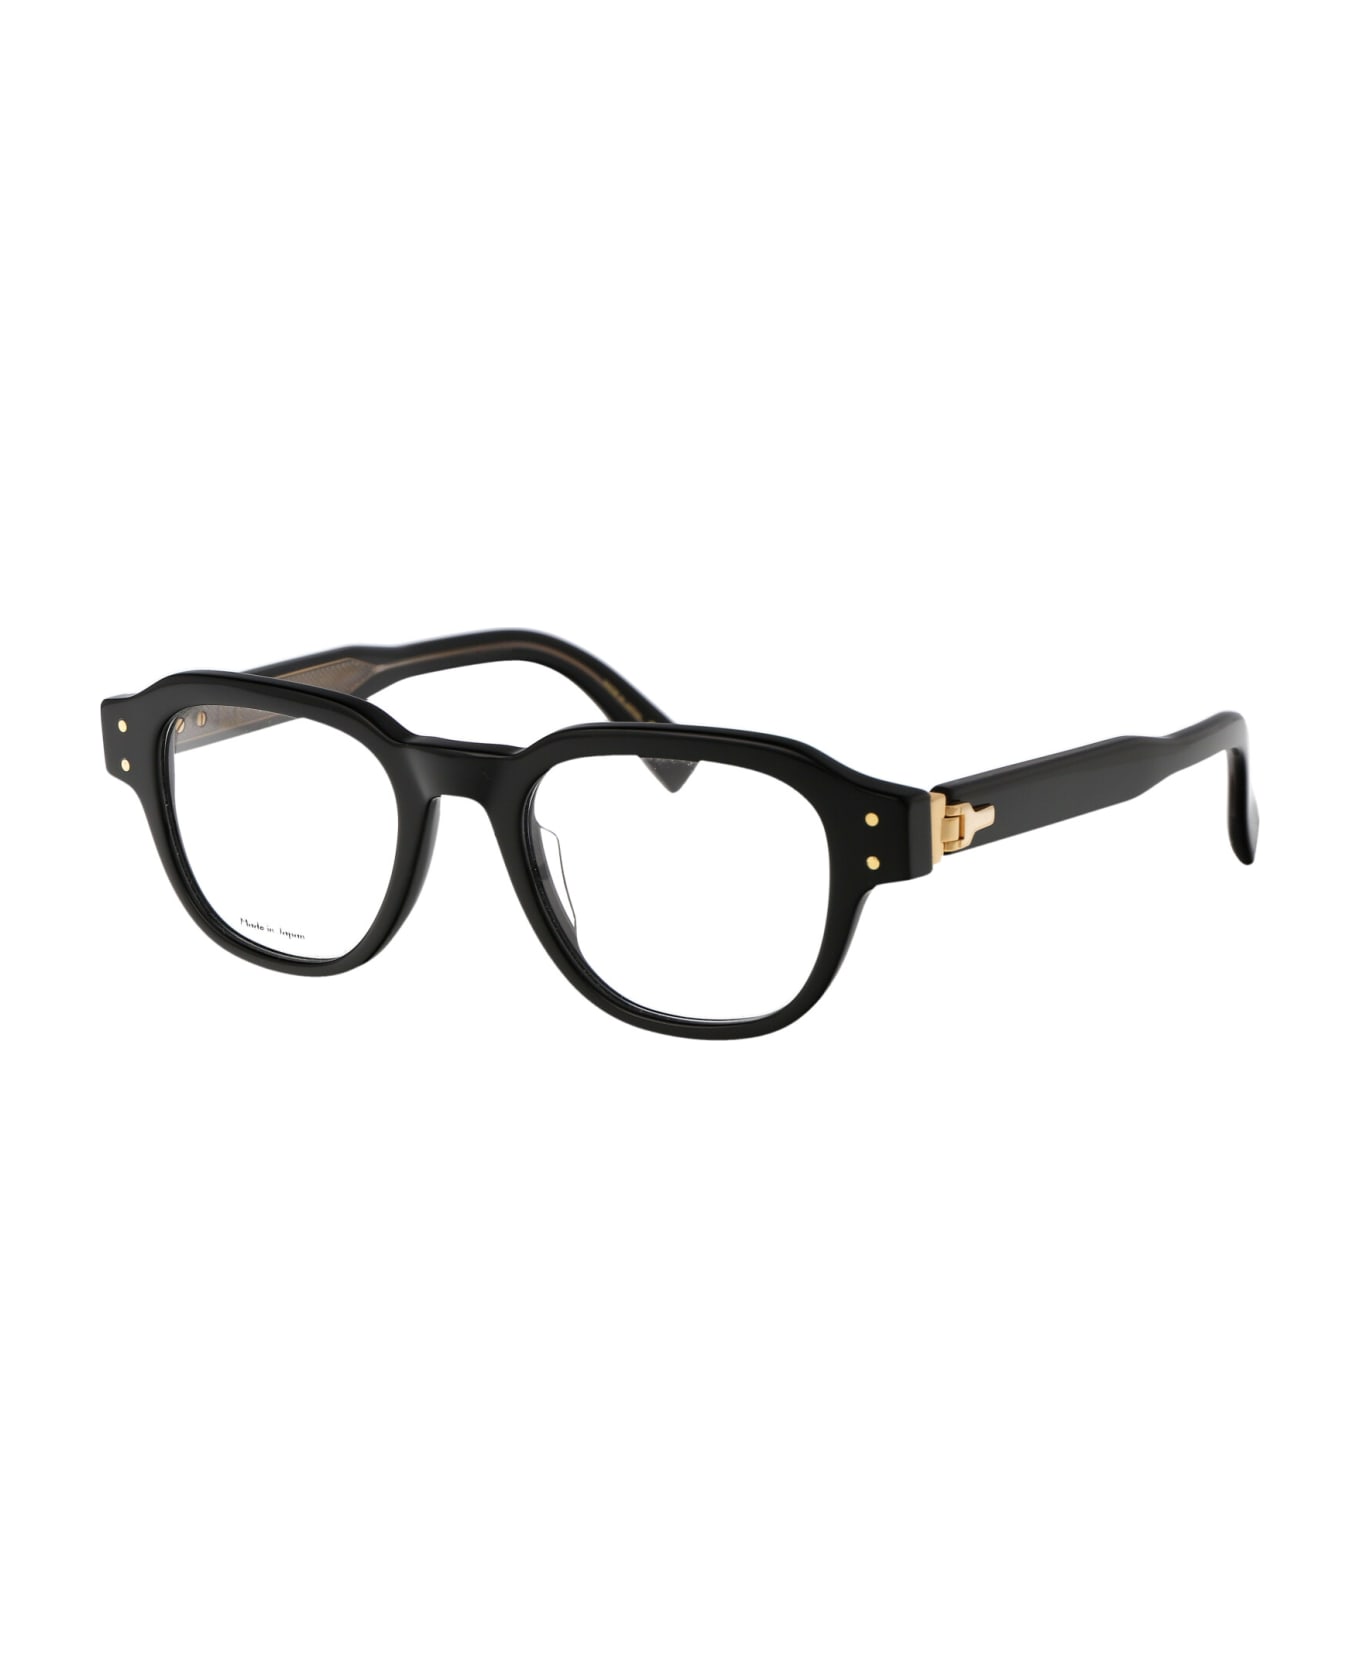 Dunhill Du0048o Glasses - 001 BLACK BLACK TRANSPARENT アイウェア